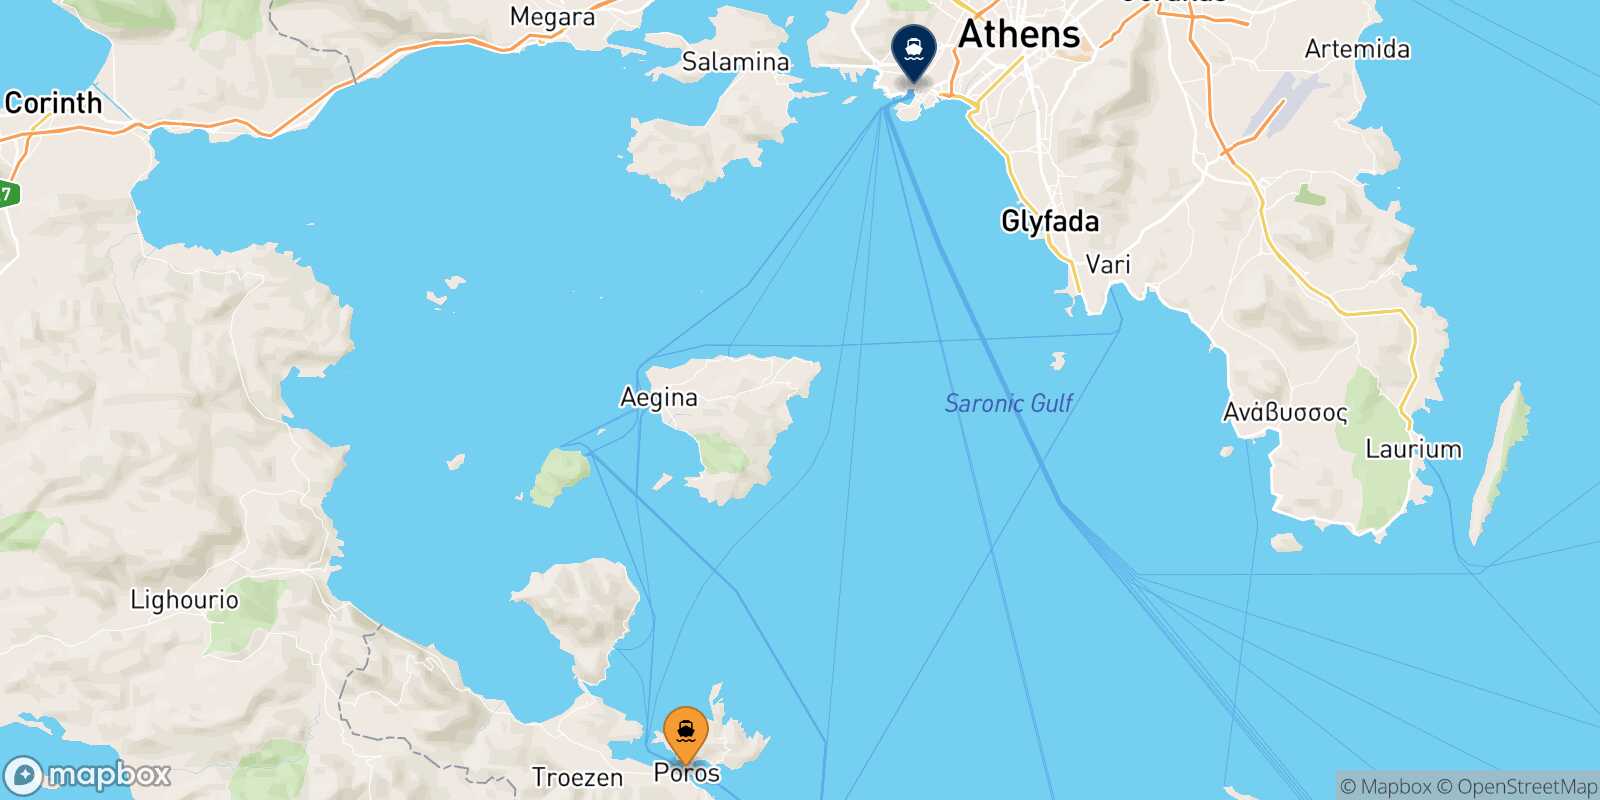 Poros Piraeus route map